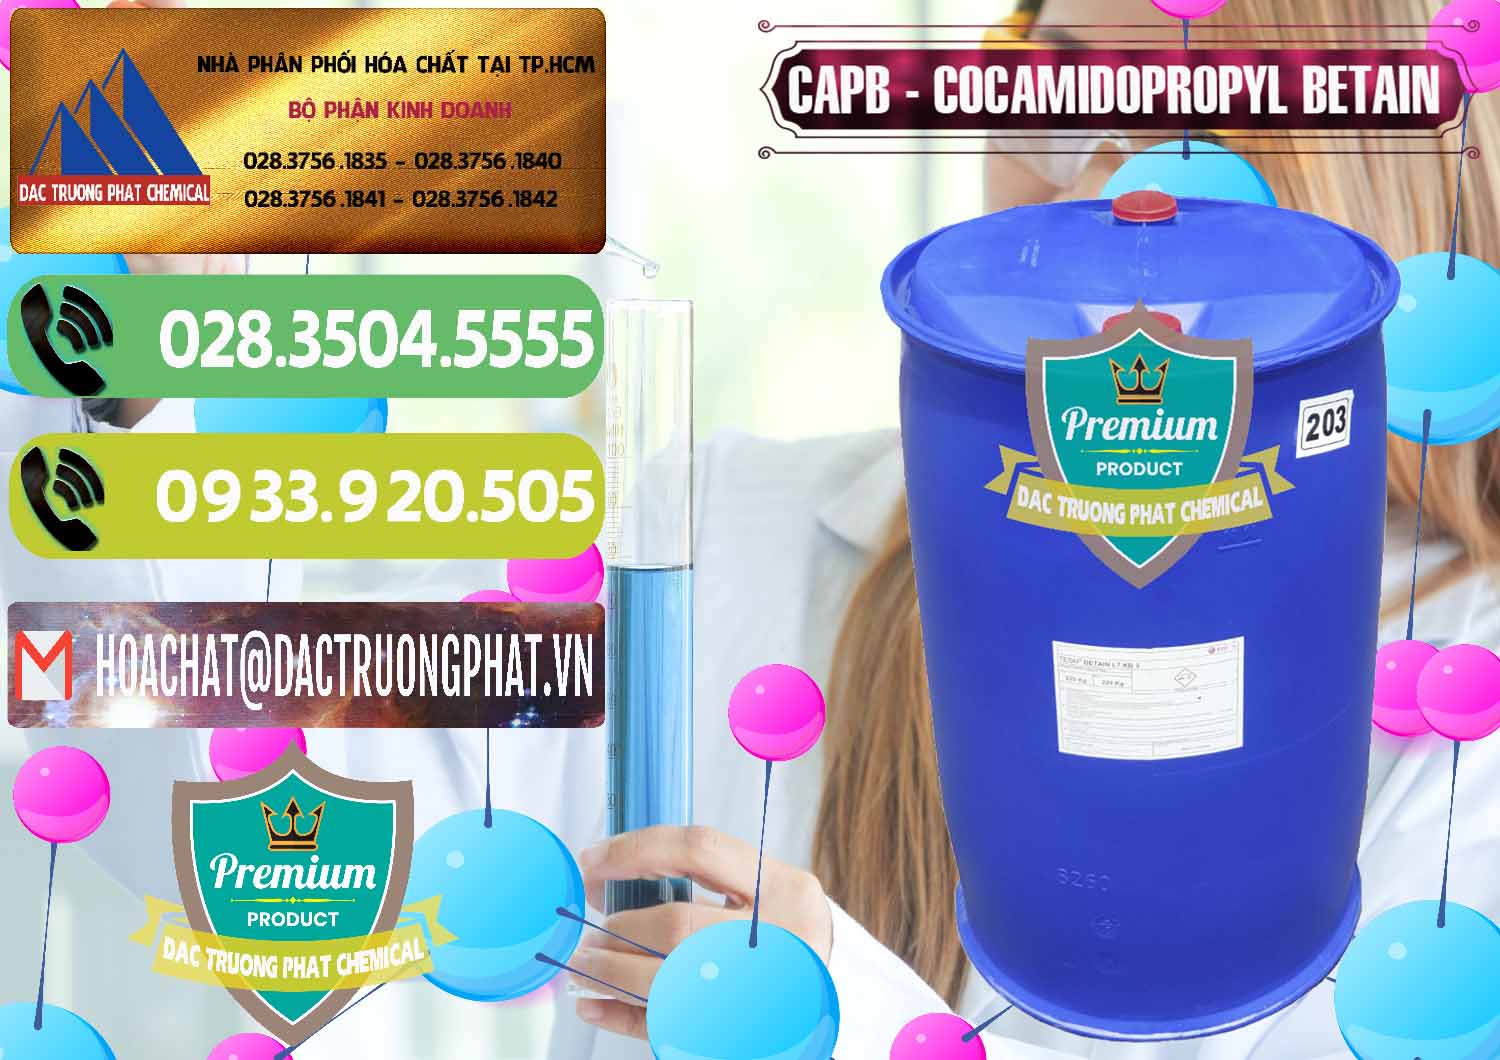 Nơi chuyên phân phối & bán Cocamidopropyl Betaine - CAPB Tego Indonesia - 0327 - Chuyên cung cấp ( kinh doanh ) hóa chất tại TP.HCM - hoachatmientay.vn